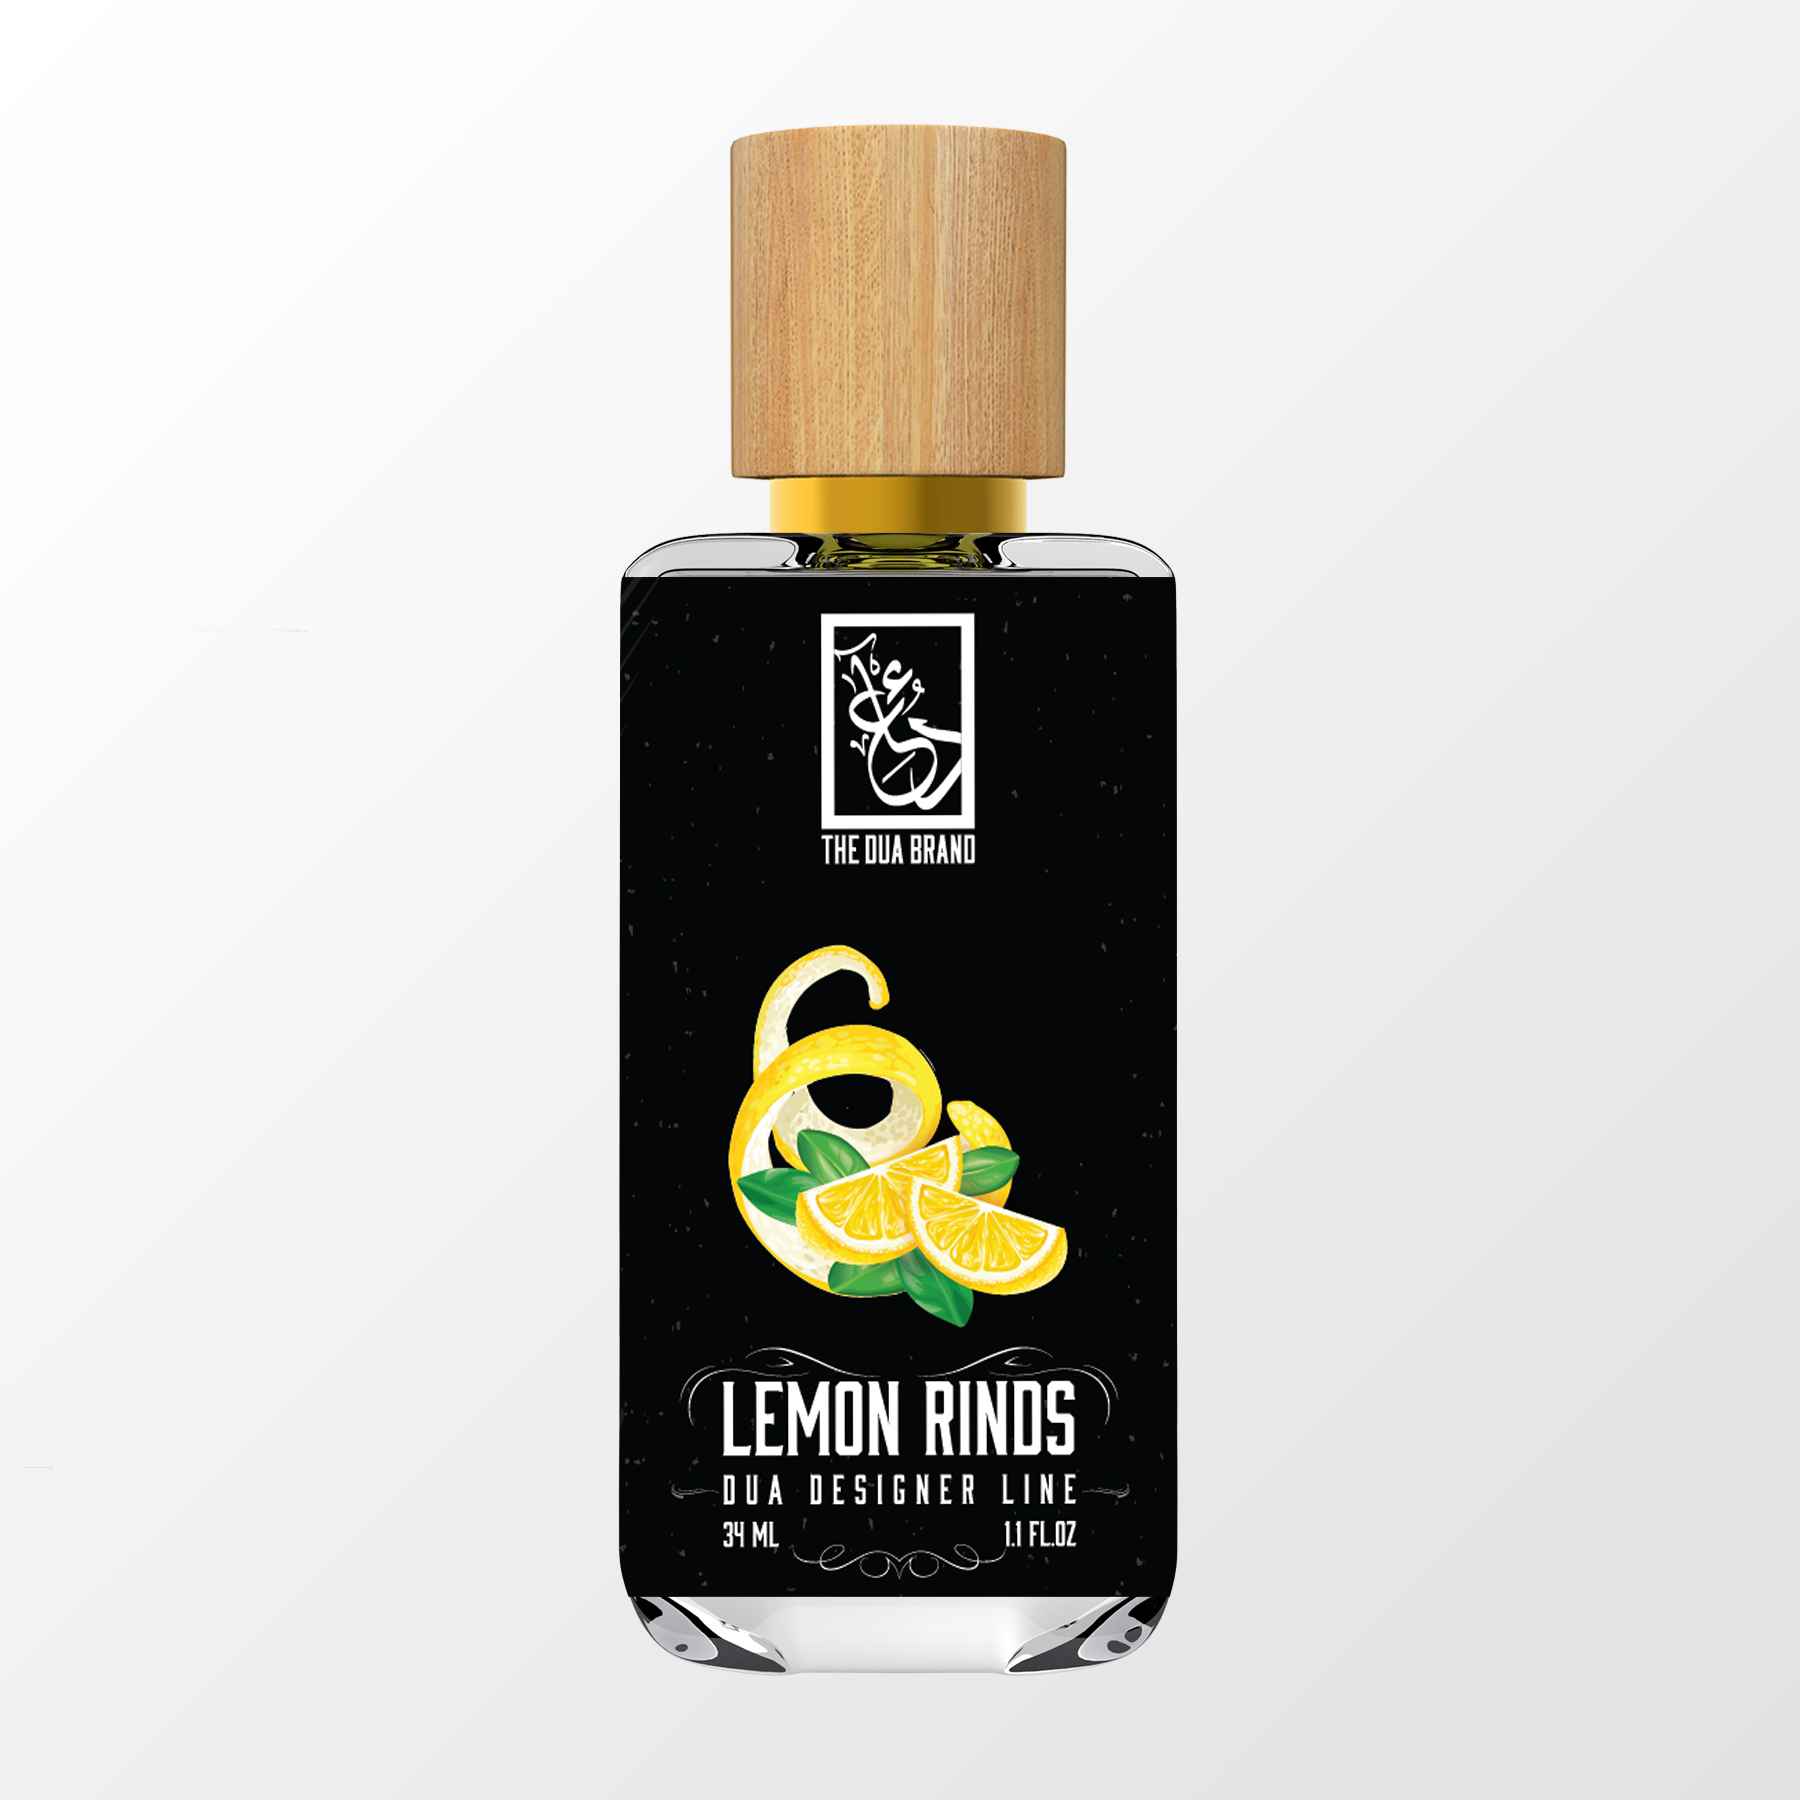 Lemon Rinds